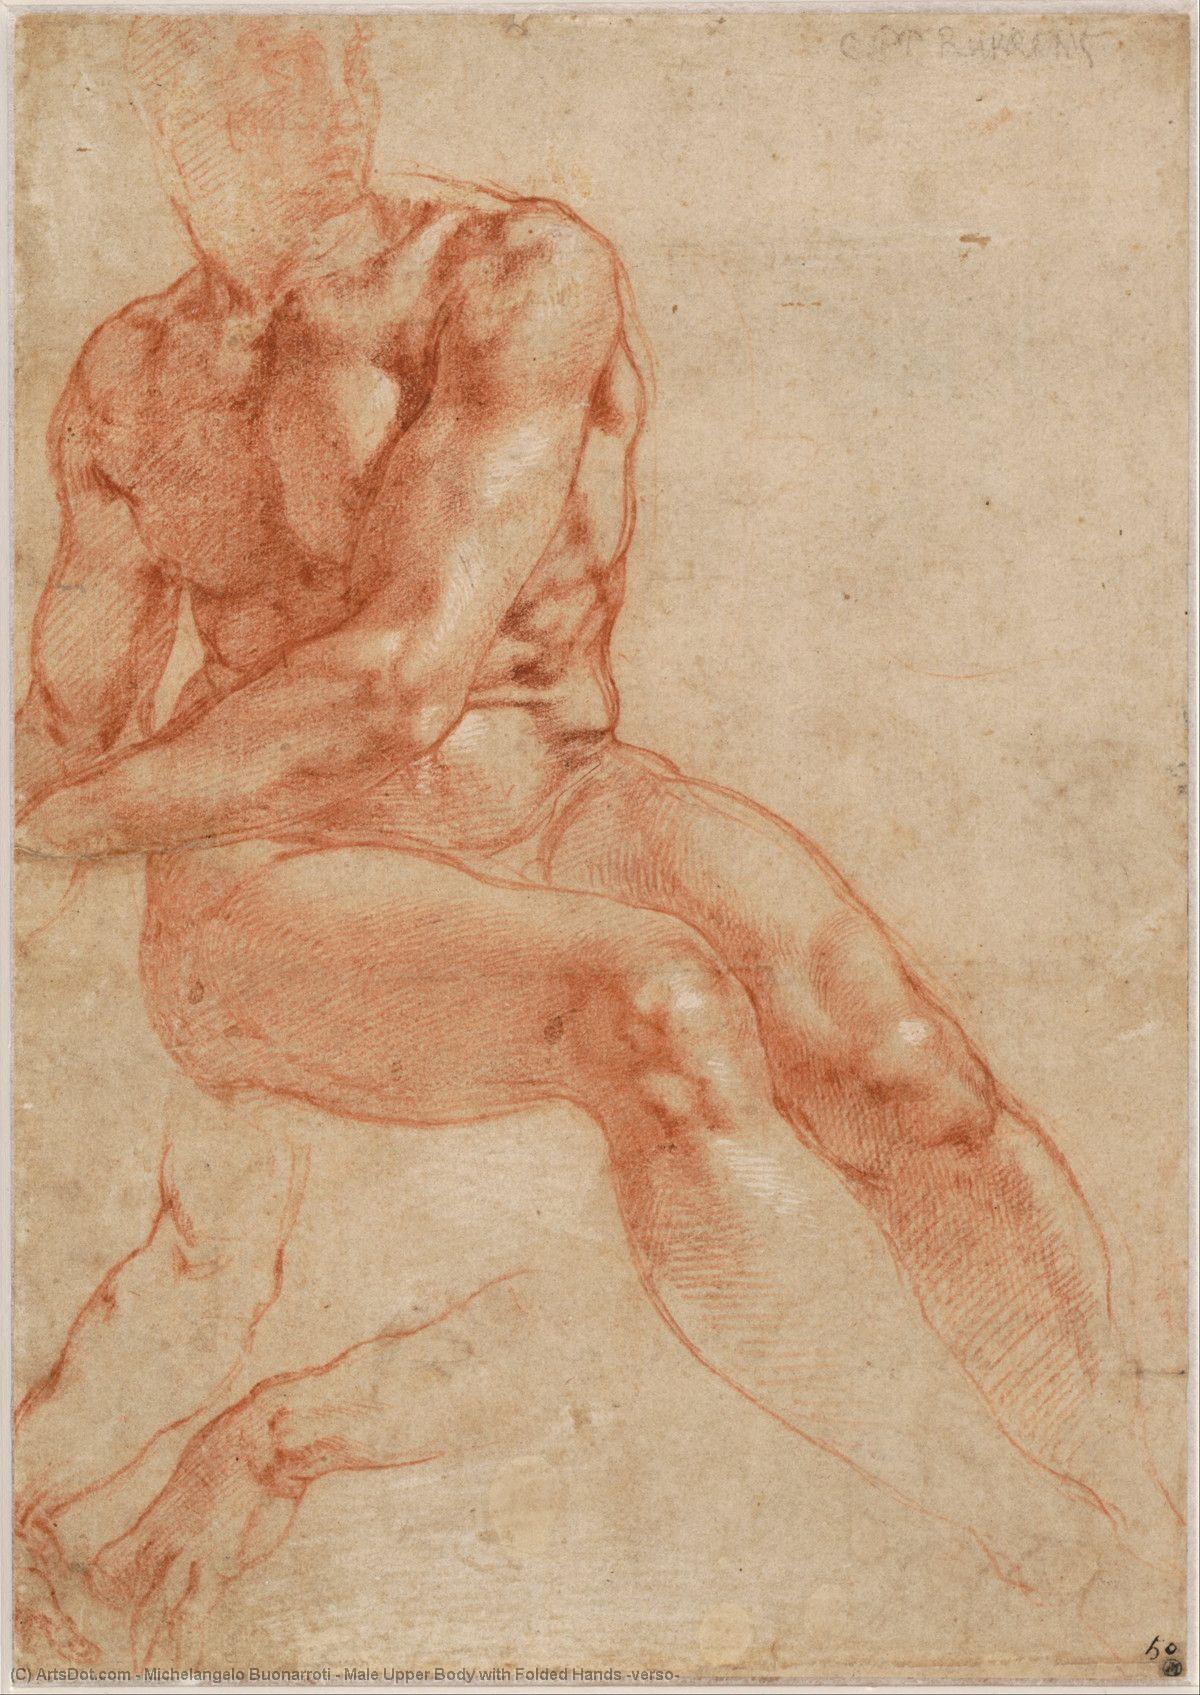 WikiOO.org - Encyclopedia of Fine Arts - Lukisan, Artwork Michelangelo Buonarroti - Male Upper Body with Folded Hands (verso)